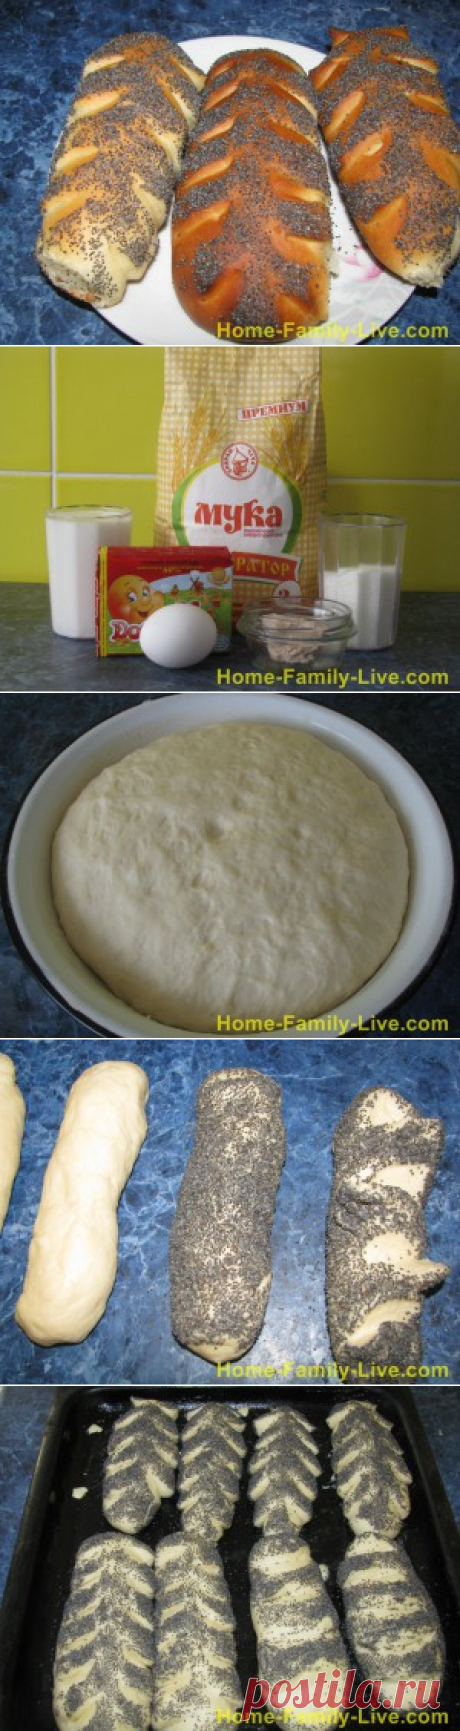 Булочки с маком - рецепт приготовления вкусных булочек с макомКулинарные рецепты